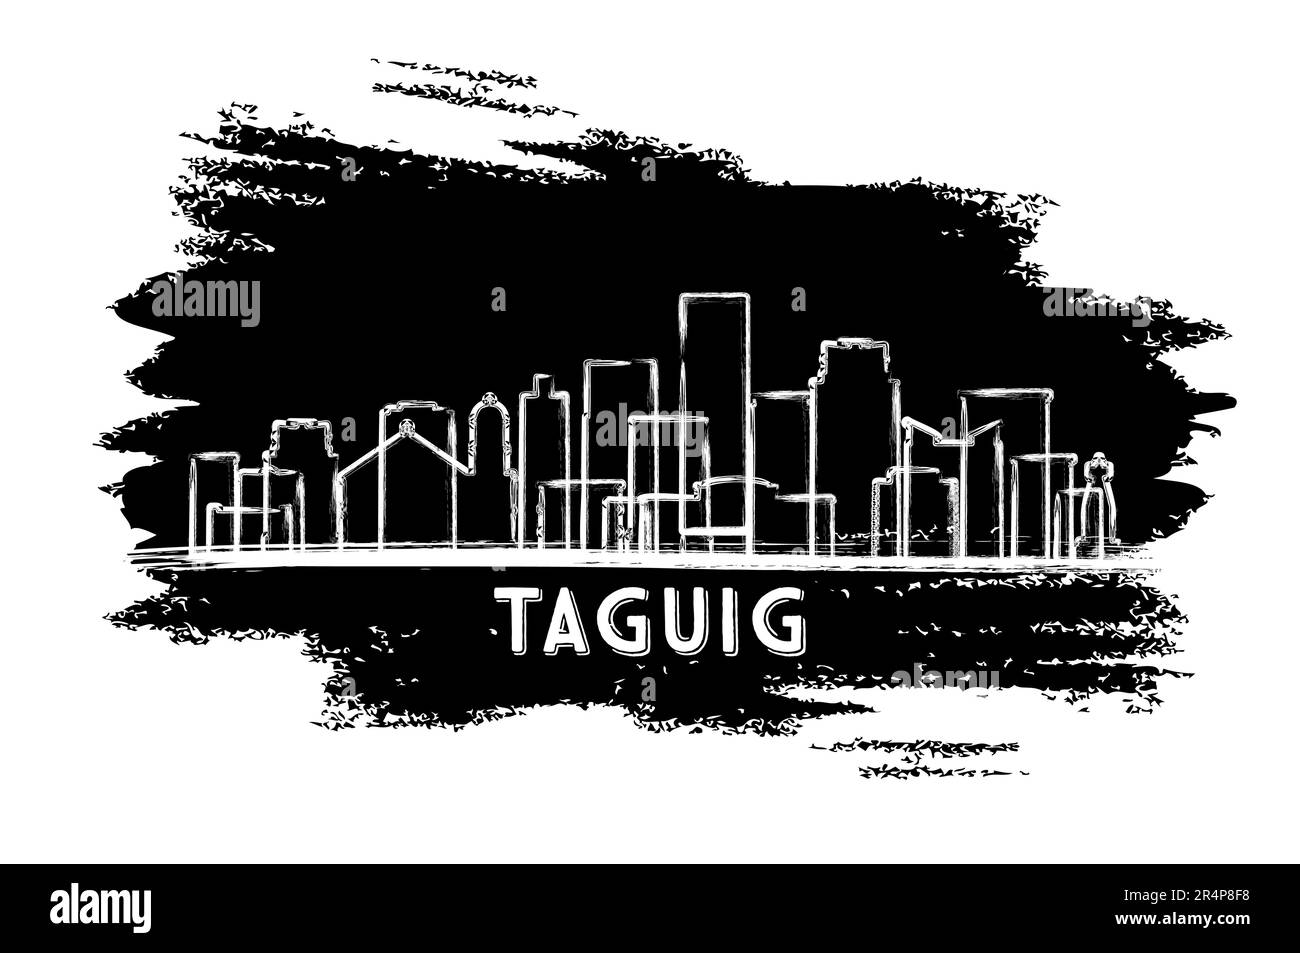 Silhouette de la ville de Taguig Philippines. Esquisse dessinée à la main. Voyages d'affaires et tourisme concept avec architecture moderne. Illustration vectorielle. Illustration de Vecteur